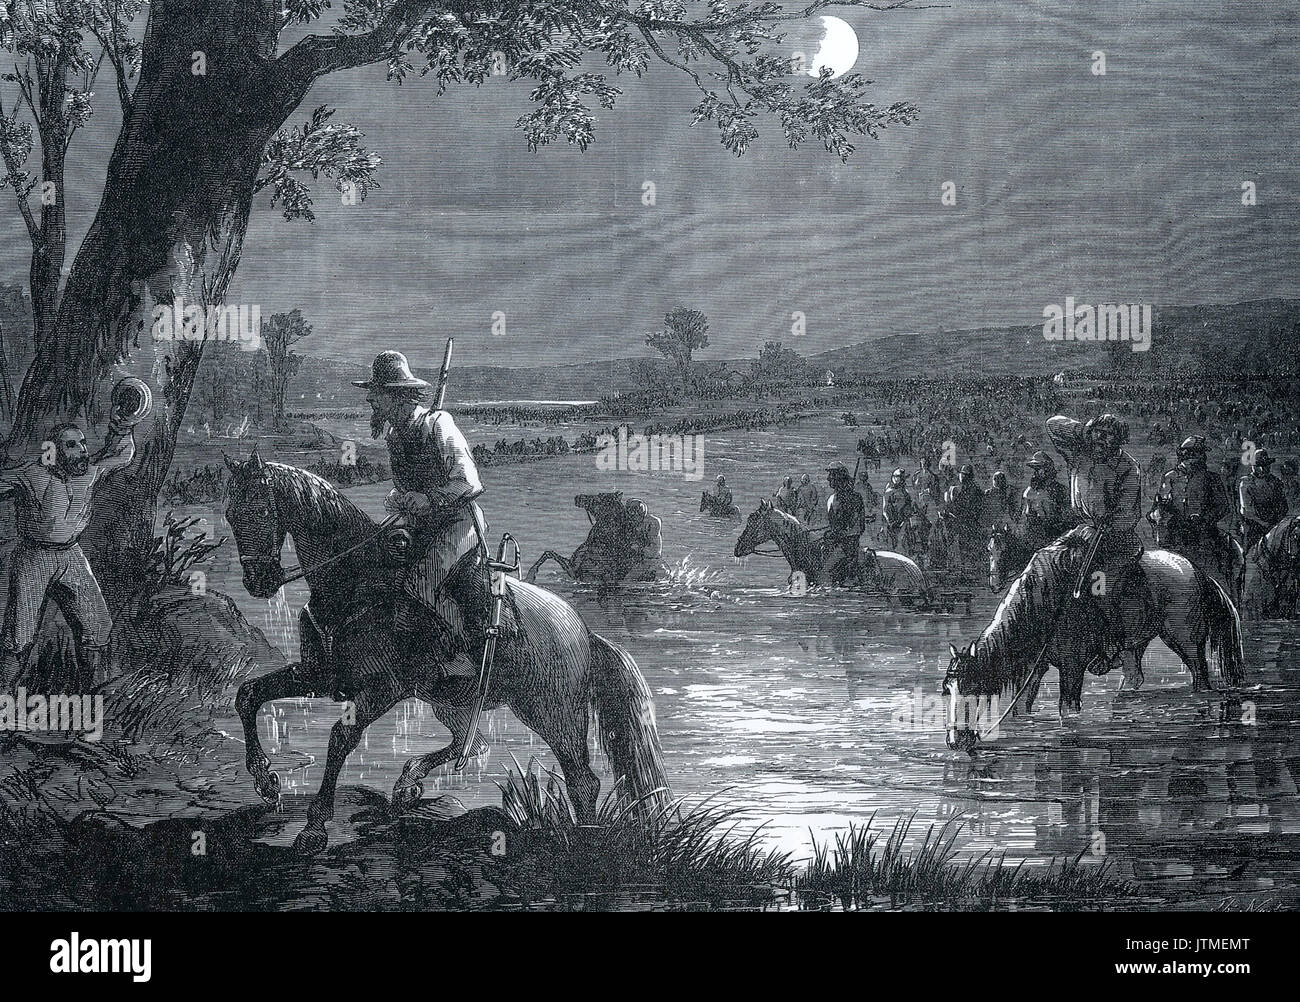 Amerikanischer Bürgerkrieg, Robert E. Lee's Armee über den Potomac in der Nacht Rückzug nach der Schlacht von Antietam, 17. September 1862 Stockfoto